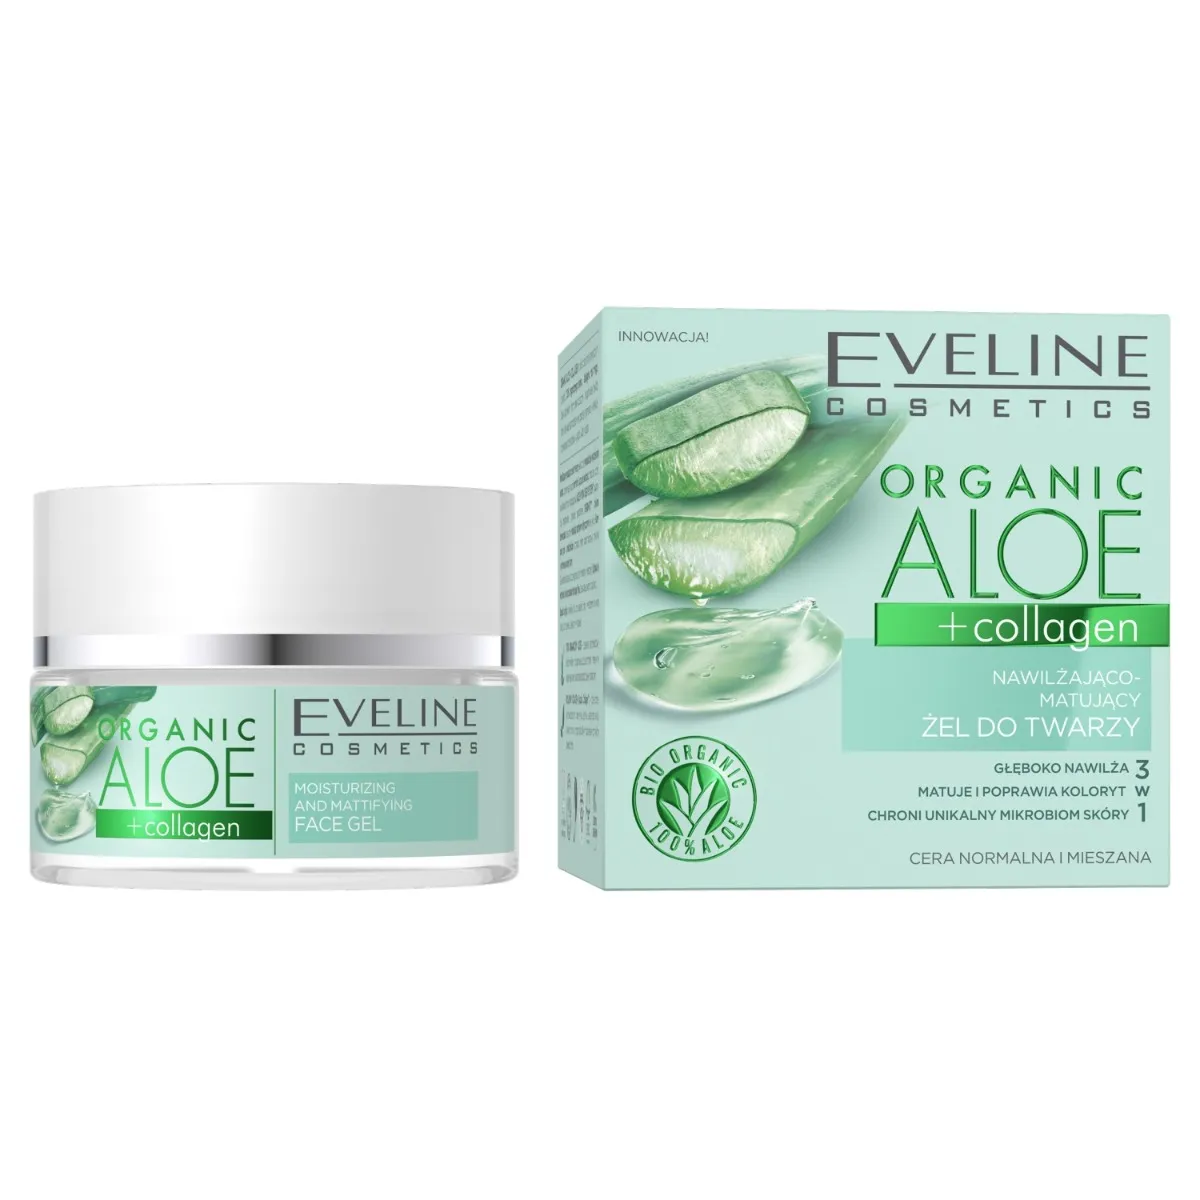 Eveline Cosmetics Organic Aloe + Collagen nawilżająco-matujący żel do twarzy, 50 ml